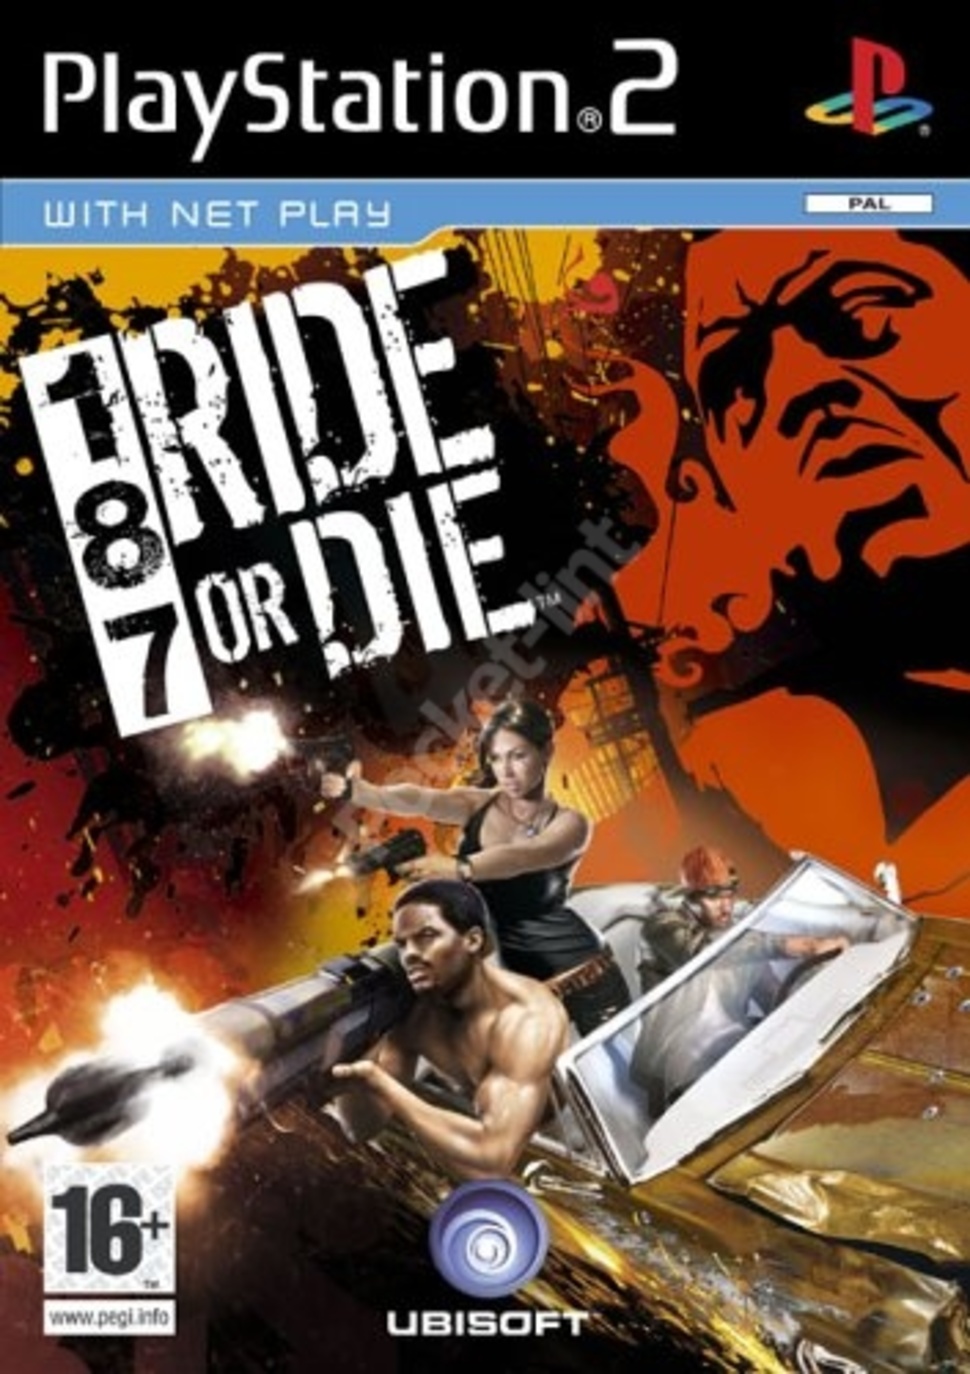 187 Ride or Die - PlayStation 2 Játékok